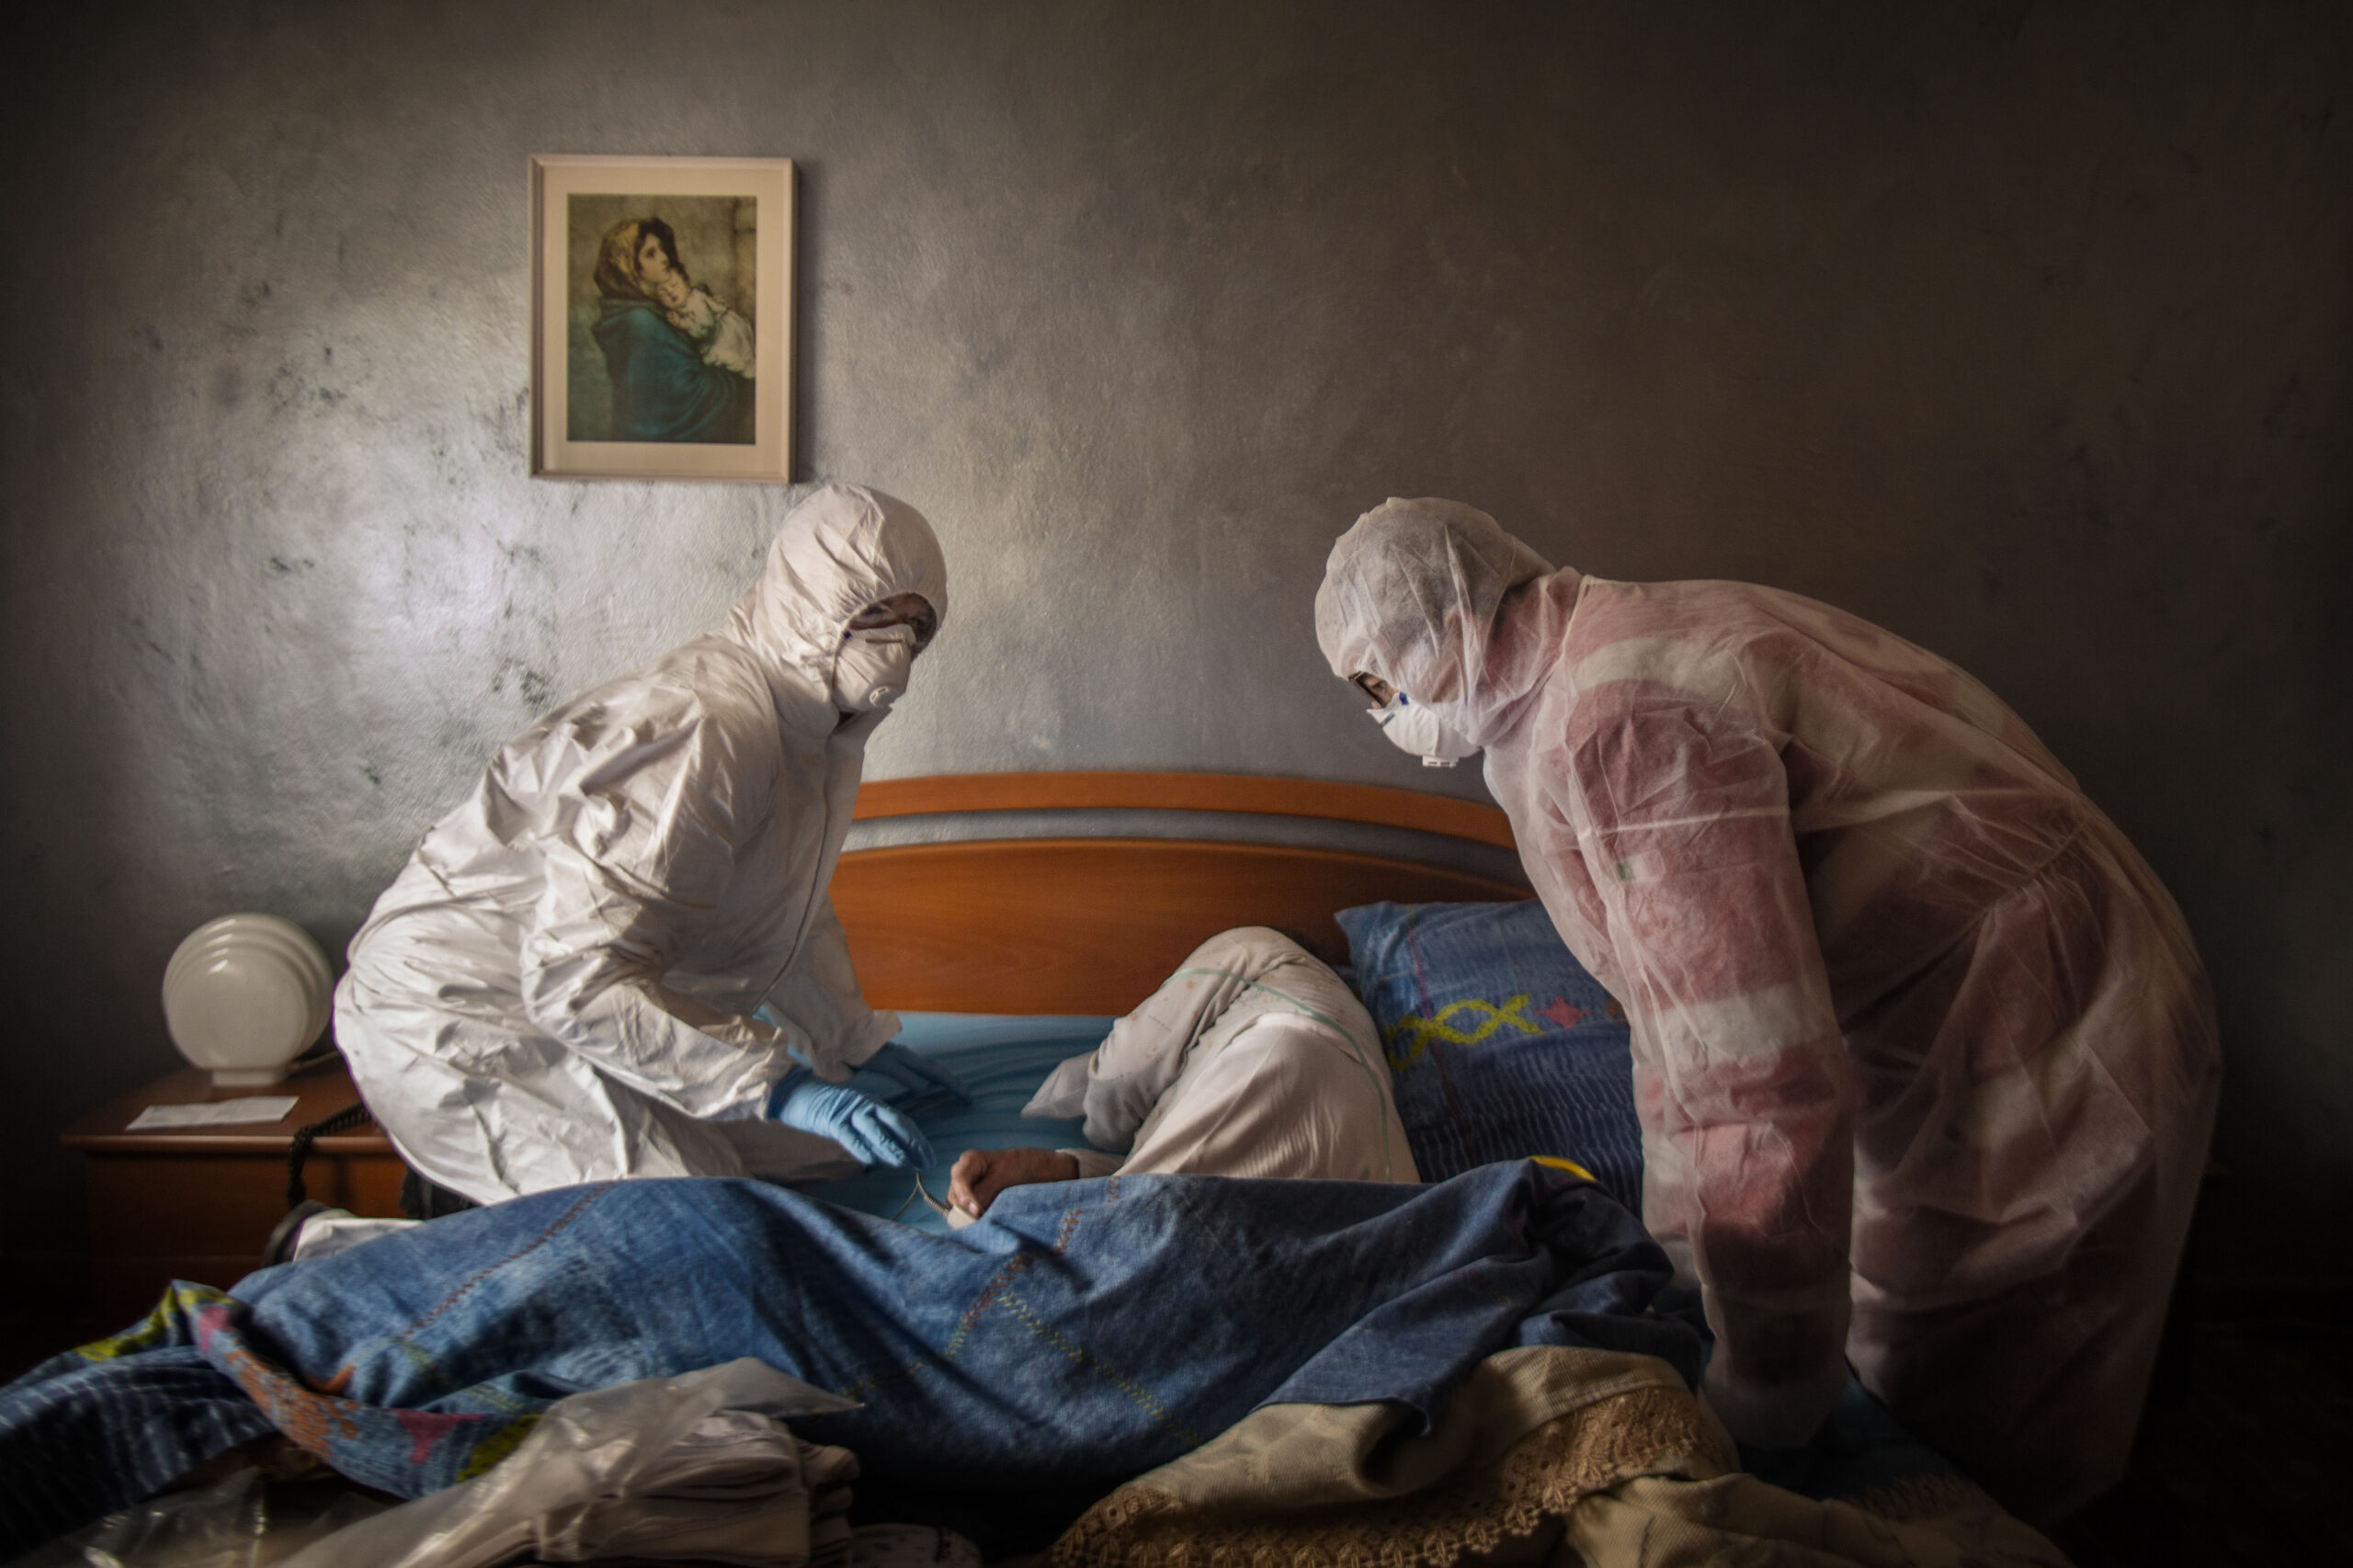 Fabio Bucciarelli -
Pradalunga (Bergamo), Marzo 2020.  
Volontari della Croce Rossa visitano una paziente sospettata di aver contratto il COVID-19, mentre è stesa, quasi incosciente, sul letto.